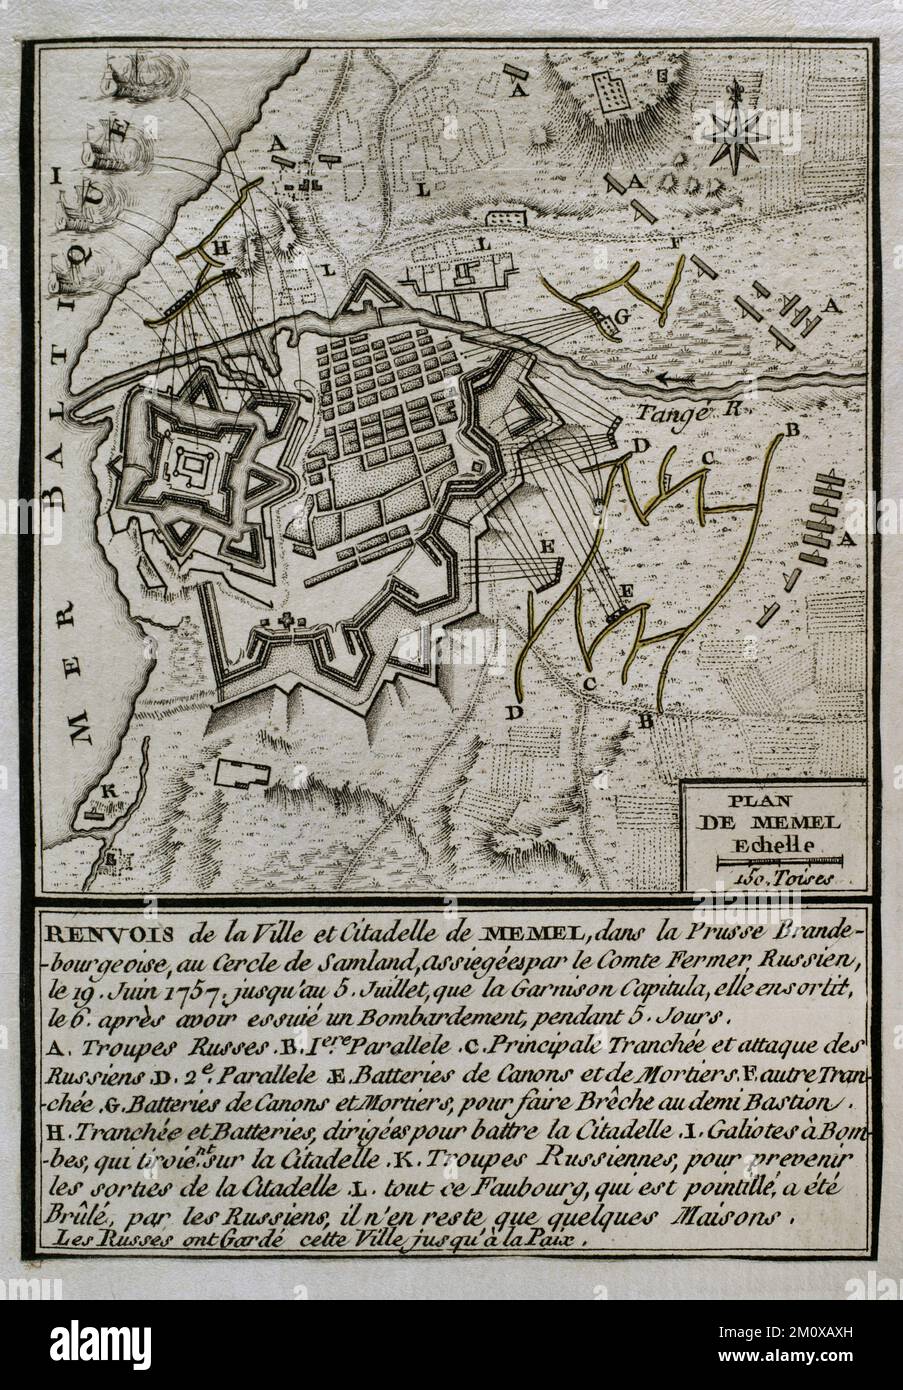 Guerra dei sette anni (1756-1763). Mappa del bombardamento russo di Memel, 1757. Il 19 giugno 1757 l'esercito russo, comandato dal maresciallo di campo Stepan Fyodorovich Apraksin, assediò la città per impadronirsi di una delle fortezze più forti della Prussia. Dopo cinque giorni di intenso fuoco d'artiglieria, le truppe russe riuscirono a sferrare il loro assalto. La guarnigione capitolò il 6 luglio e fu presa dai russi per il resto della guerra. Memel fu usato dai russi come base da cui invadere la Prussia Orientale. Pubblicato nel 1765 dal cartografo Jean de Beaurain (1696-1771) come illustrazione della sua Grande carta Foto Stock